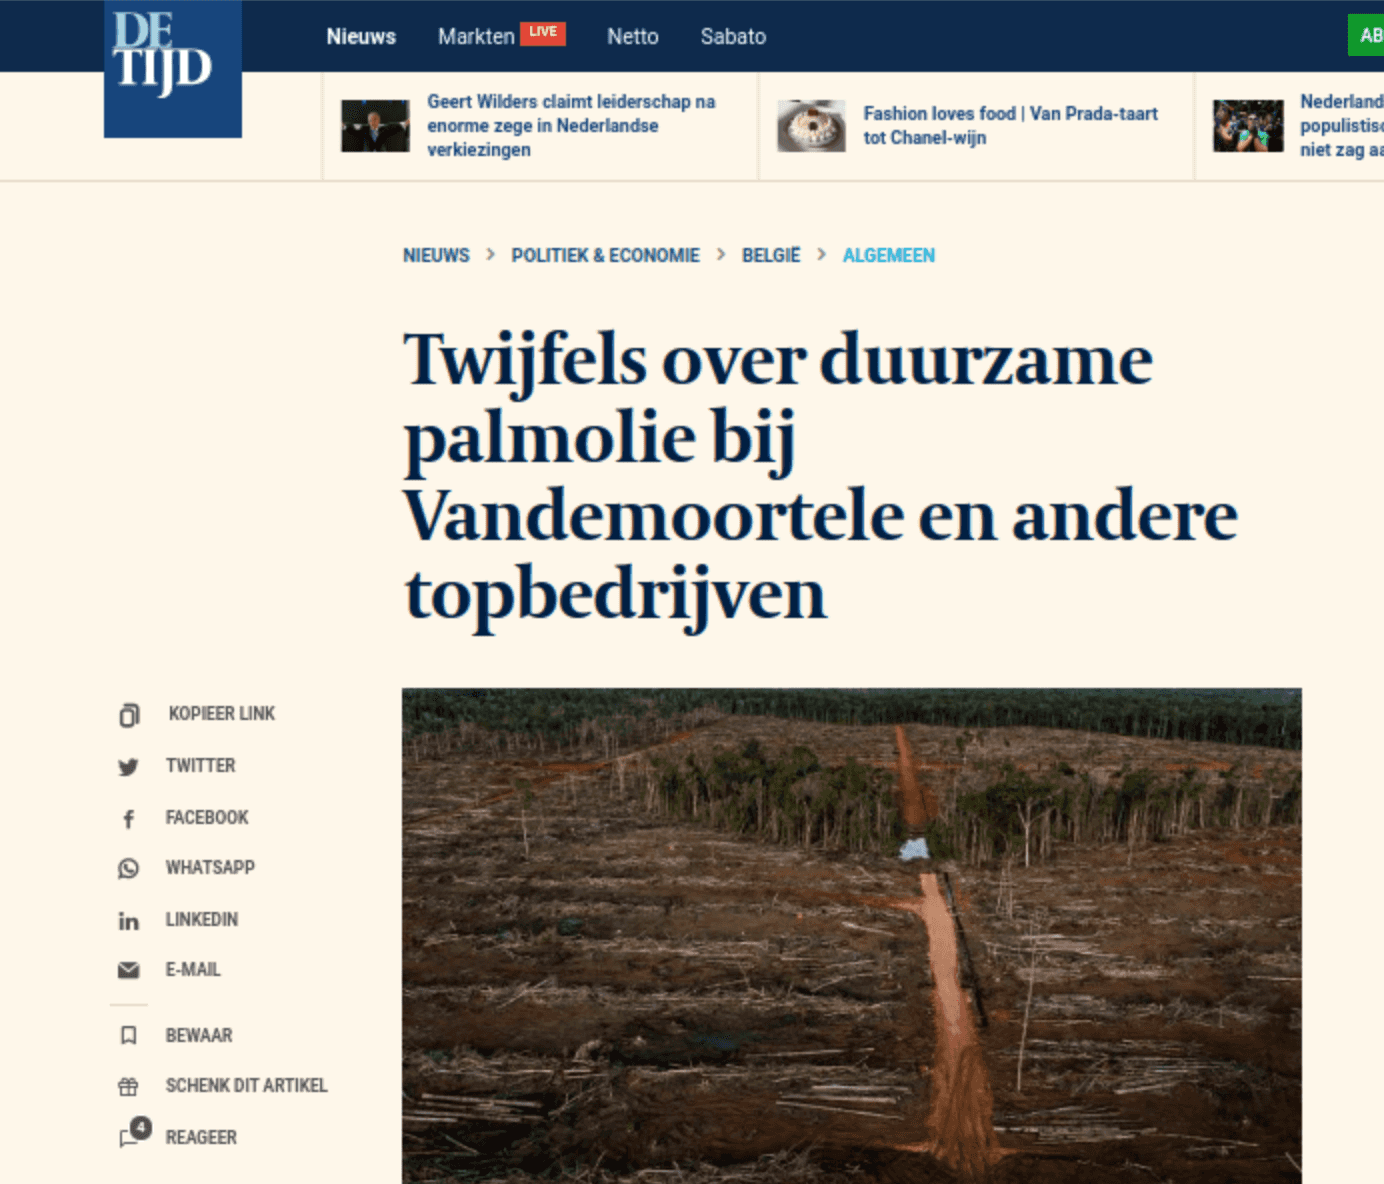 Image of the article on De Tijd's website.